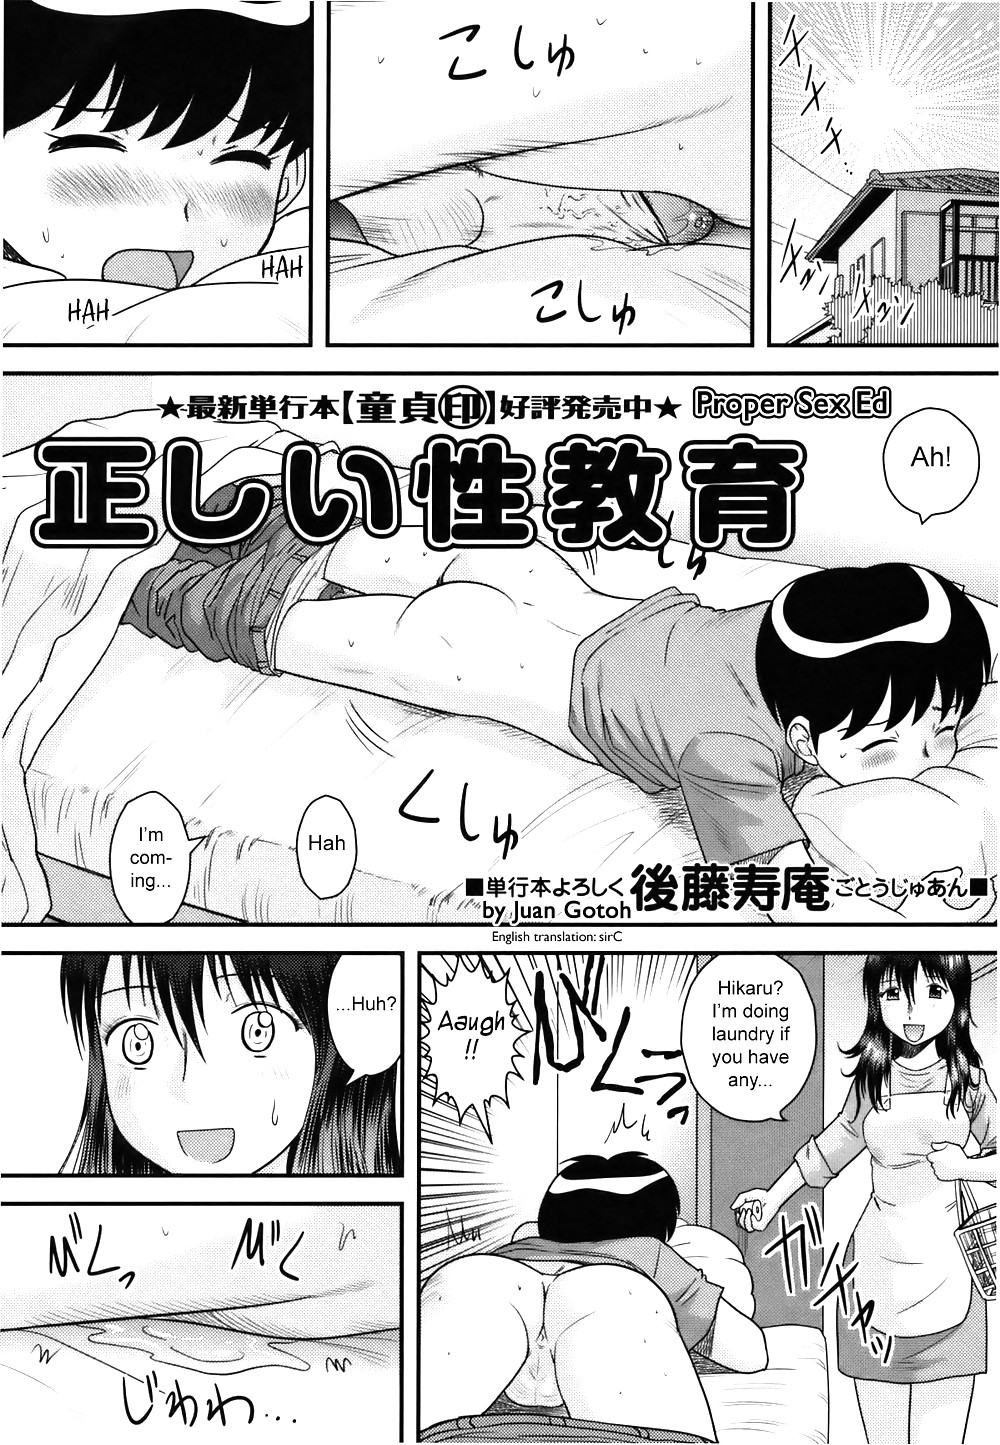 (fumetto hentai) corretta educazione sessuale
 #36885371